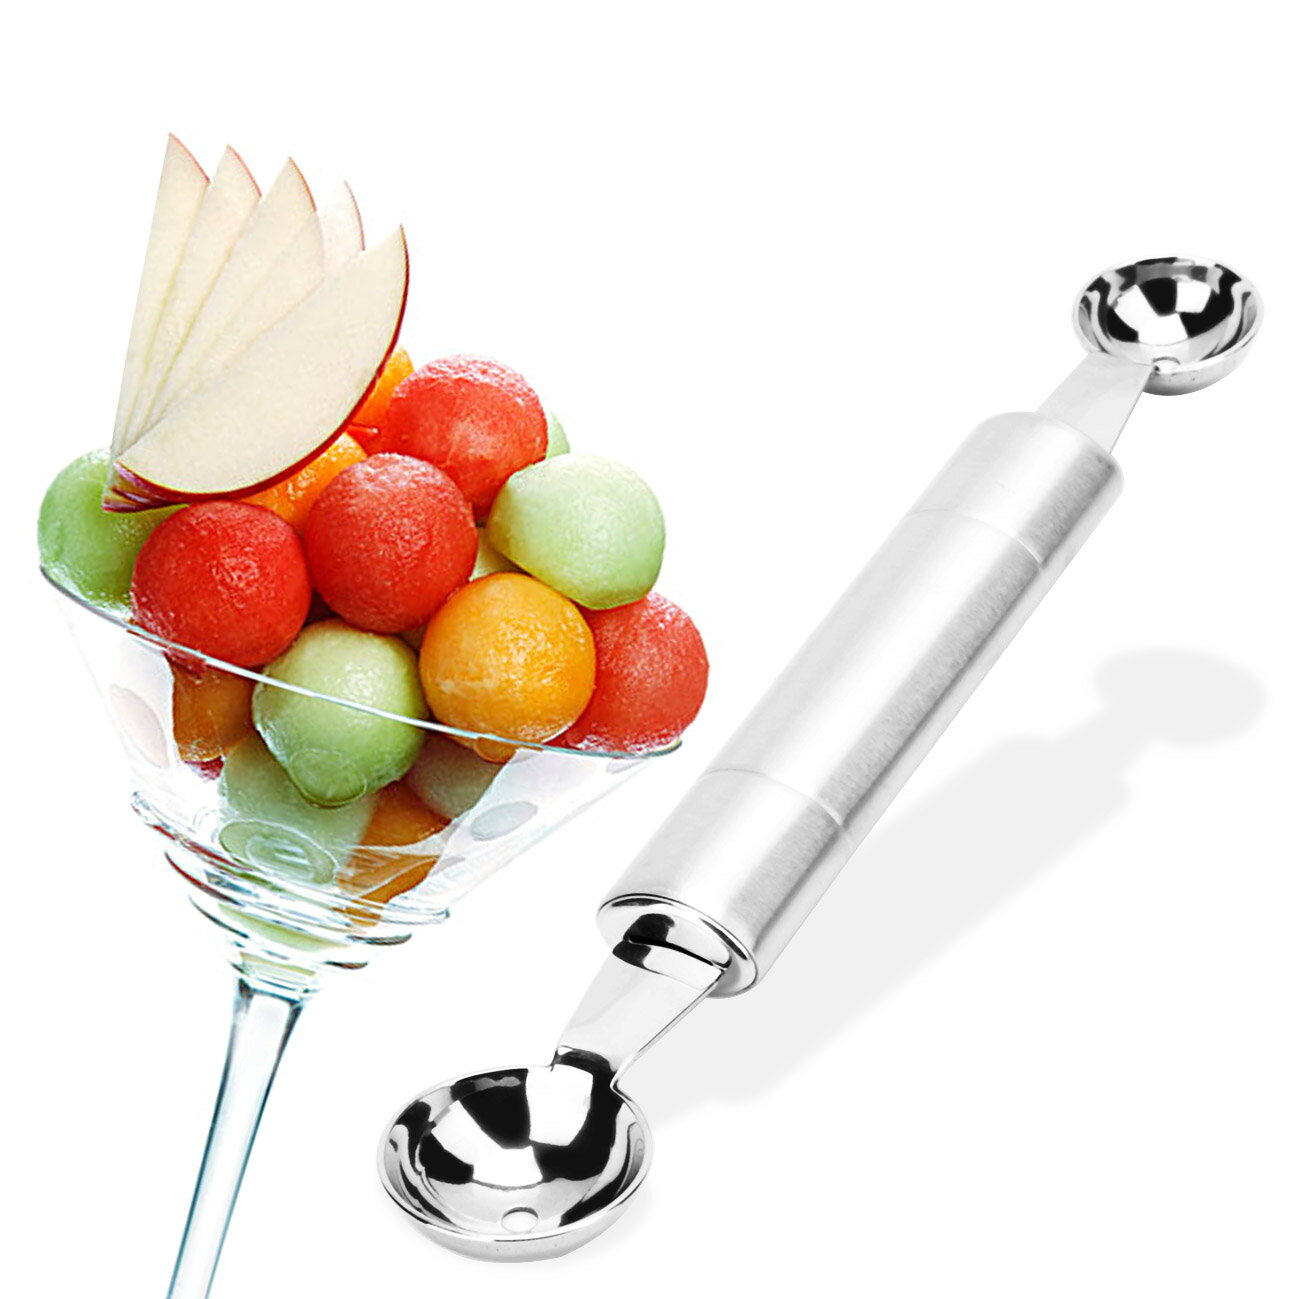 包郵全不銹鋼雙頭水果挖球器雪糕勺雙孔冰激凌勺家居實用創意工具